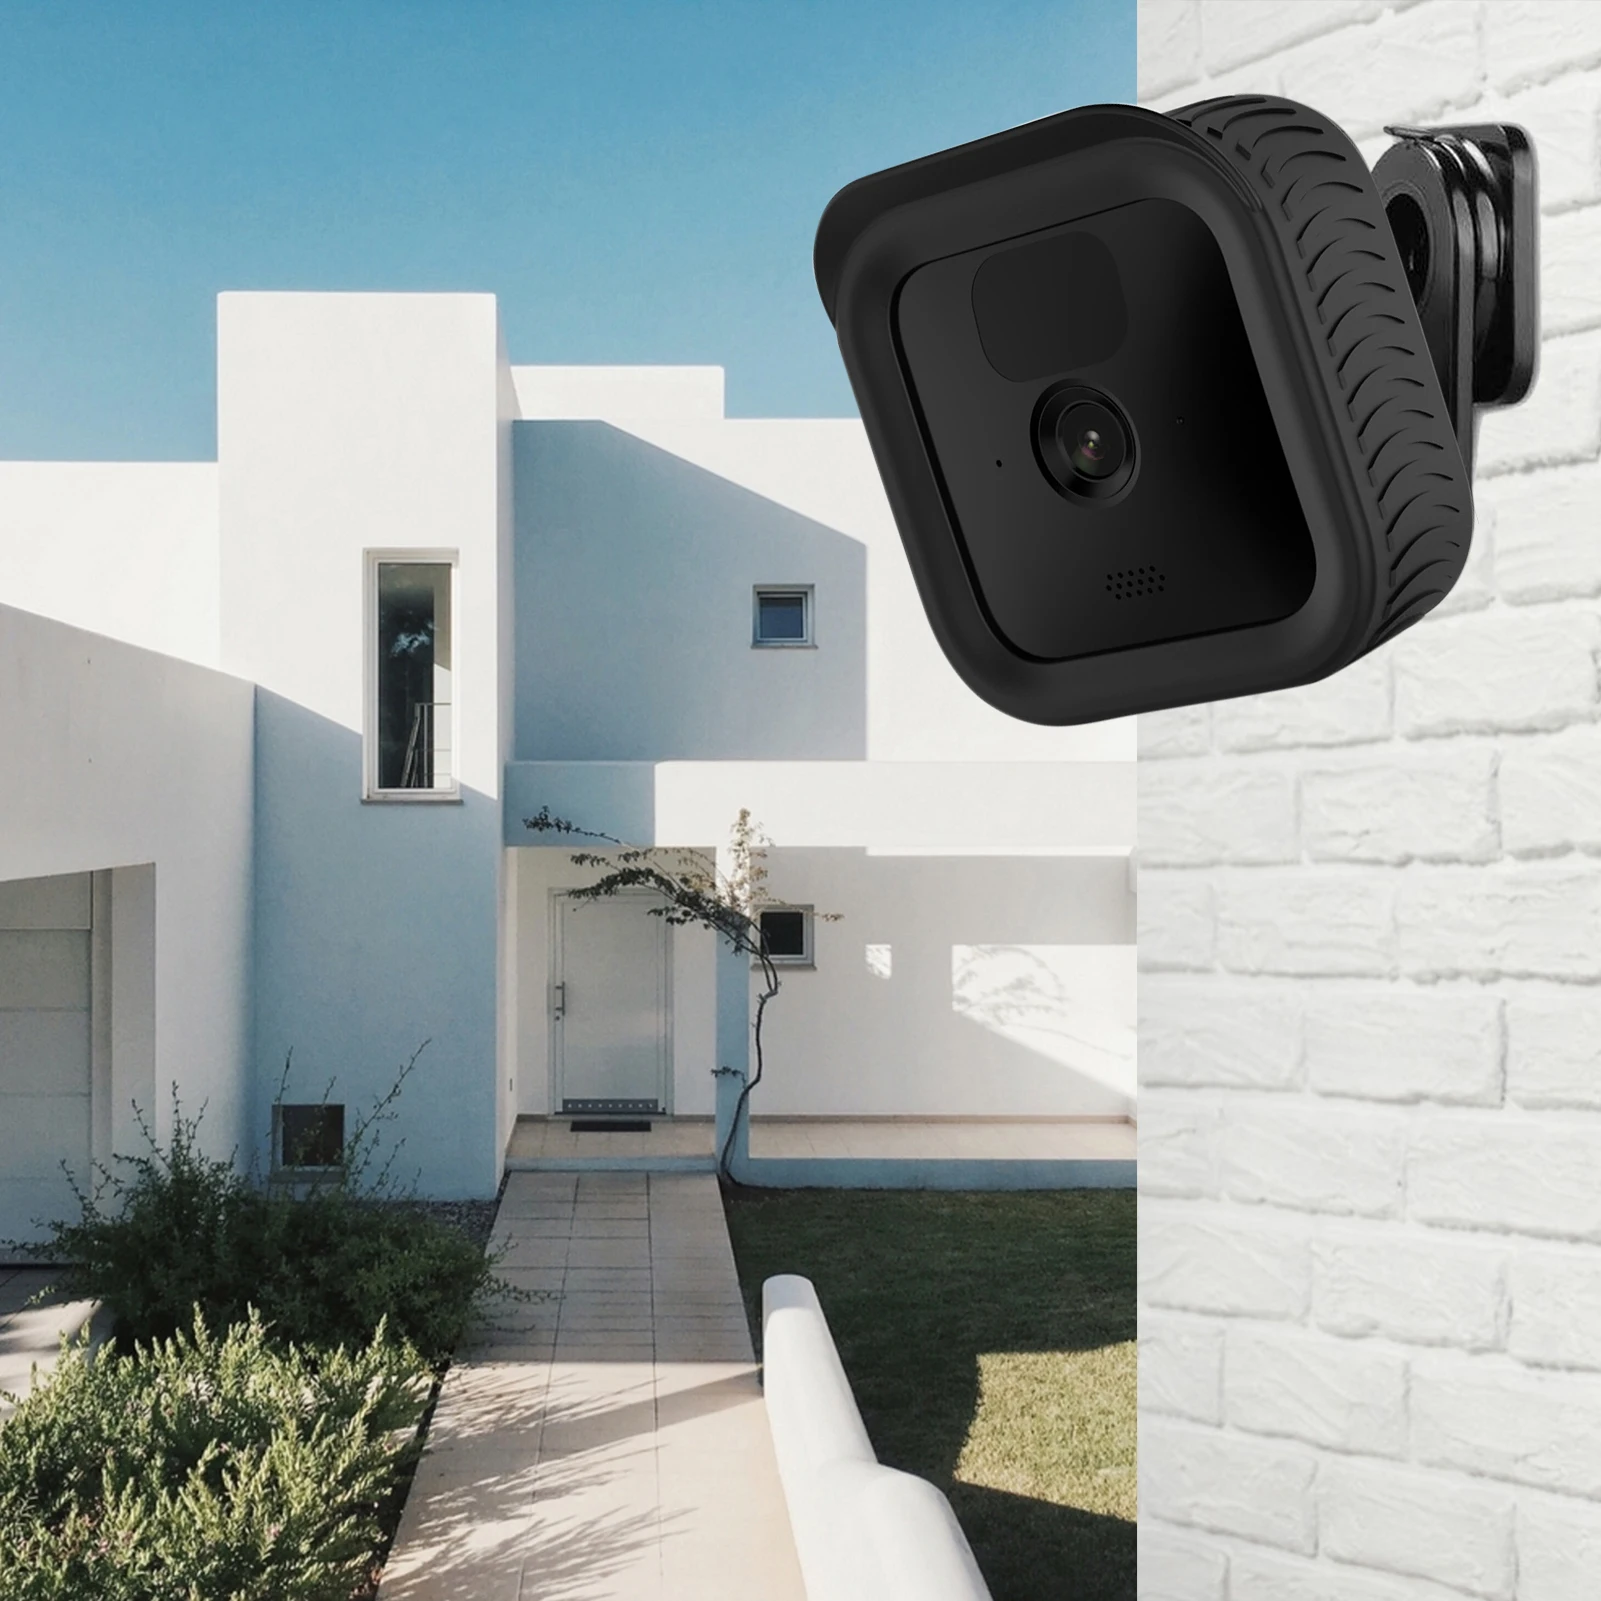 Силиконовый чехол для камеры Blink Outdoor/intdoor защитный водонепроницаемый аксессуары